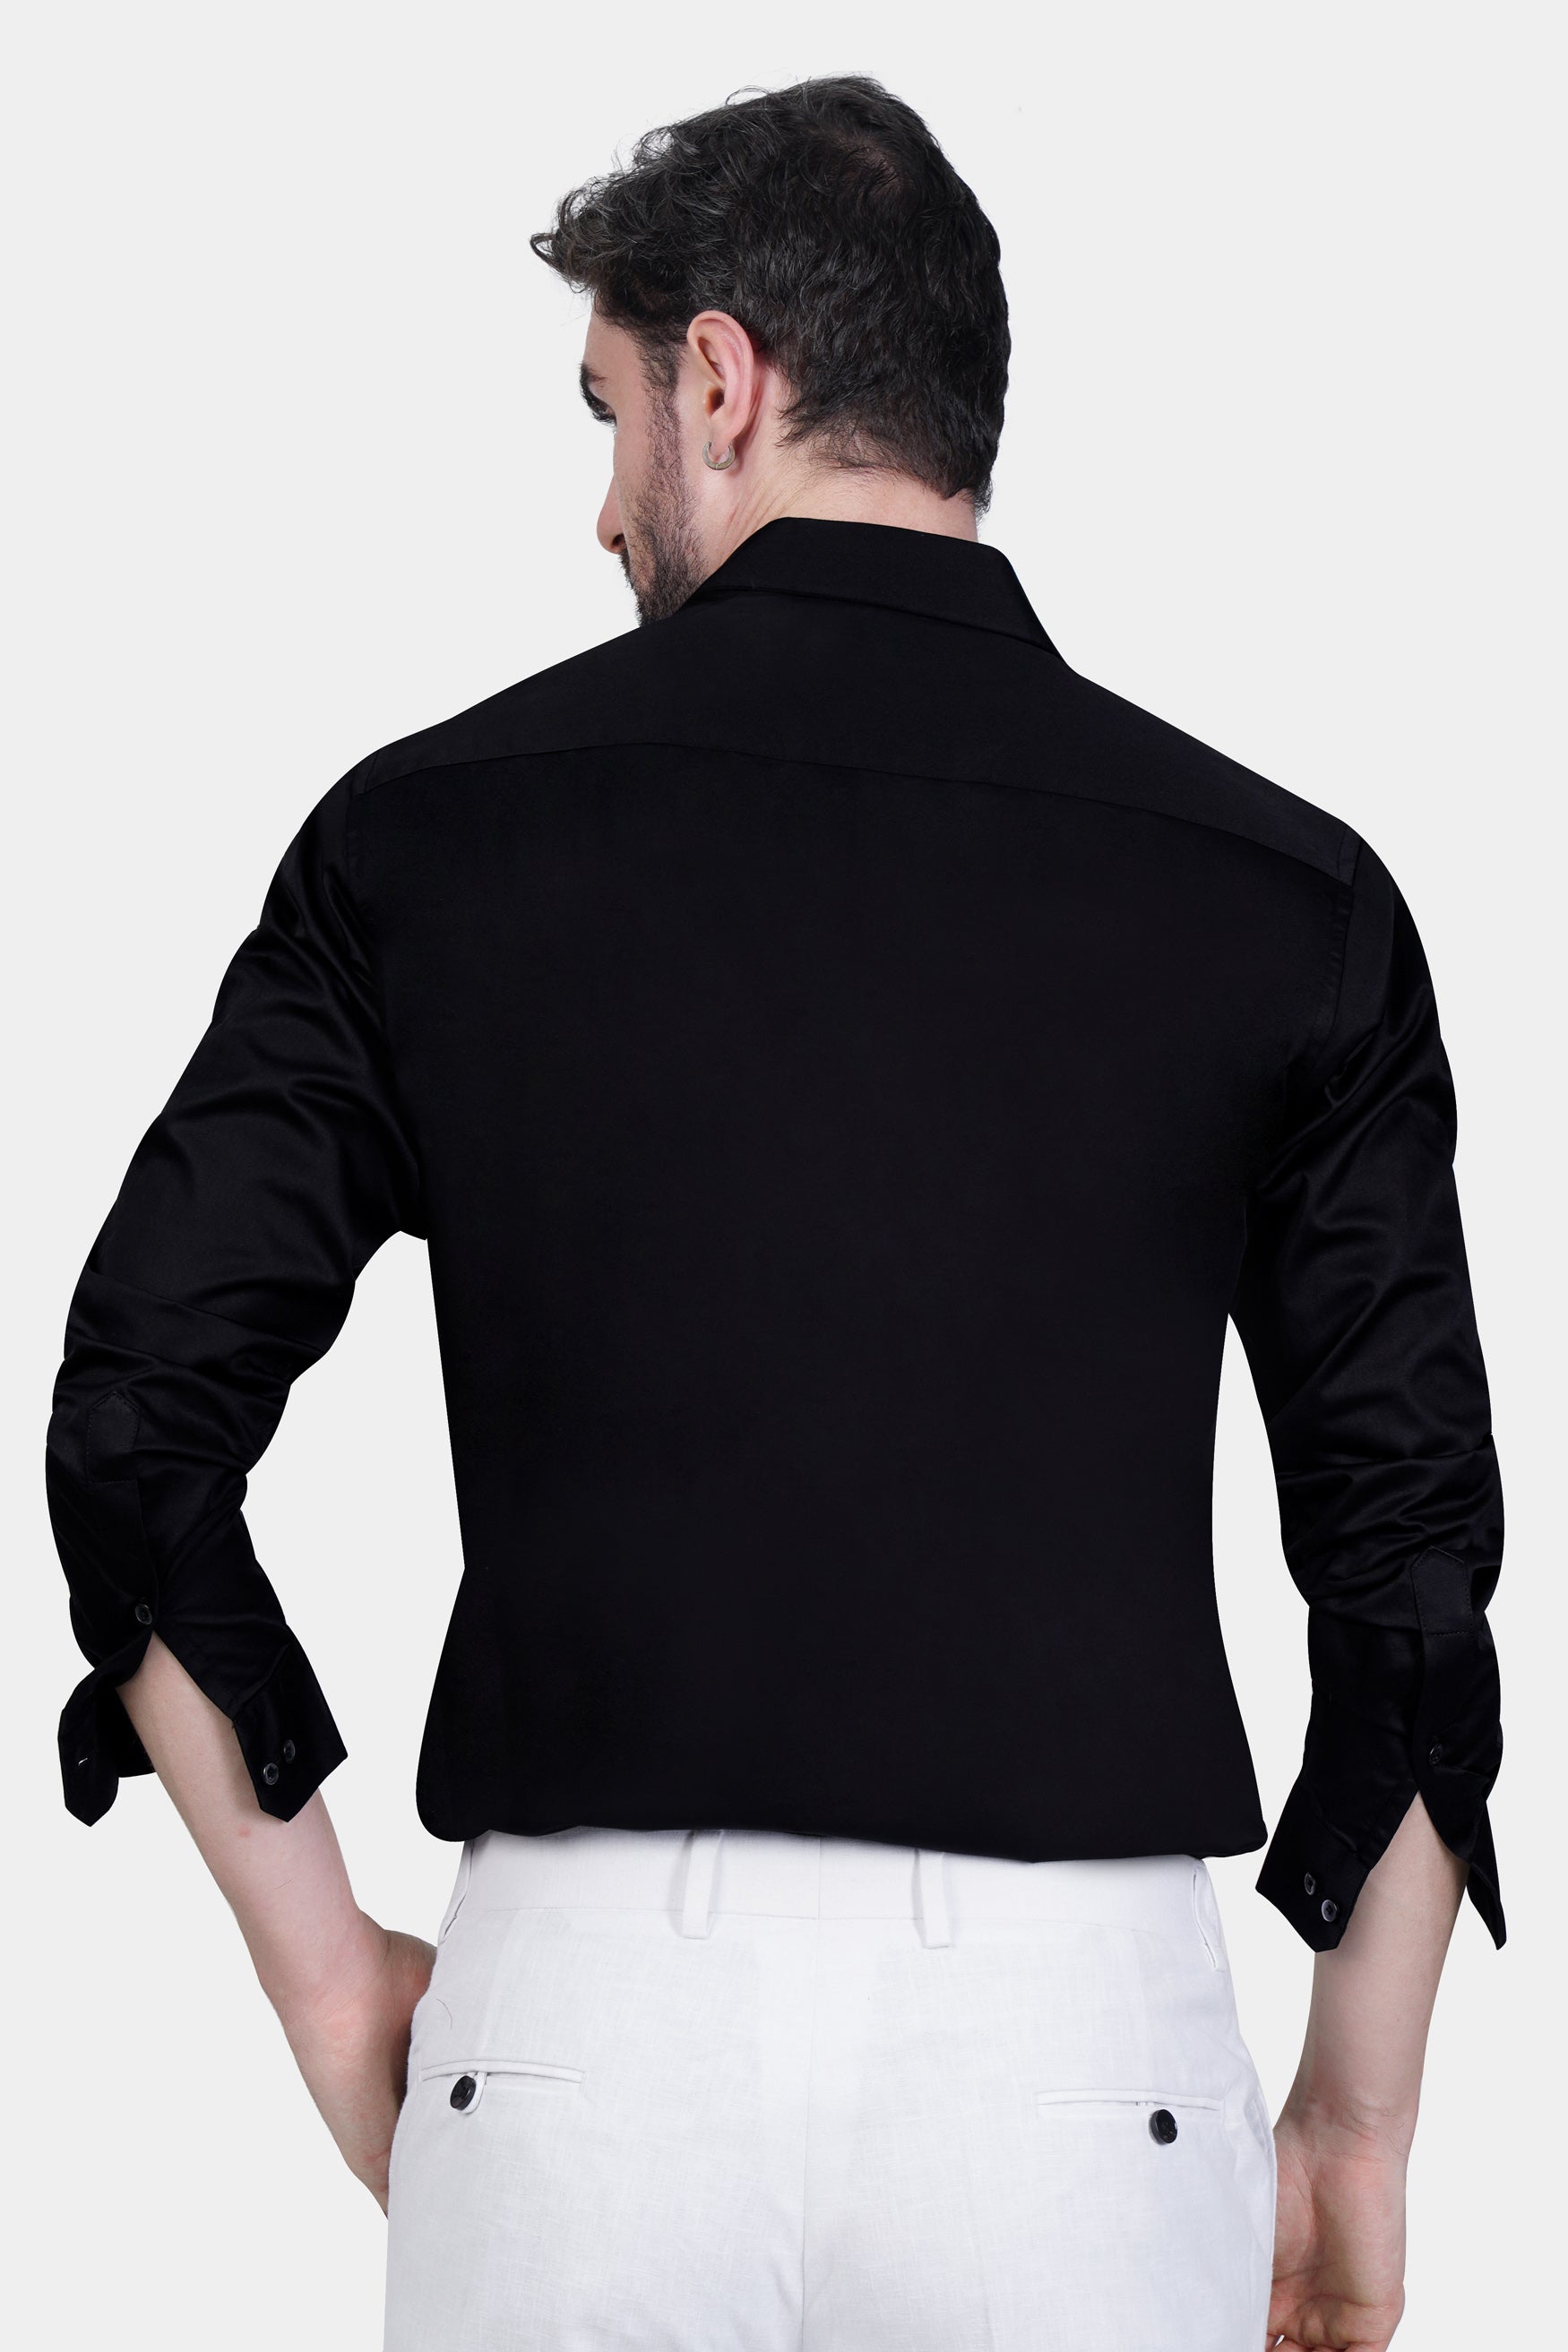 Jade Black Ferocious Lion Patchwork Subtle Sheen Super Soft Premium Cotton Designer Shirt